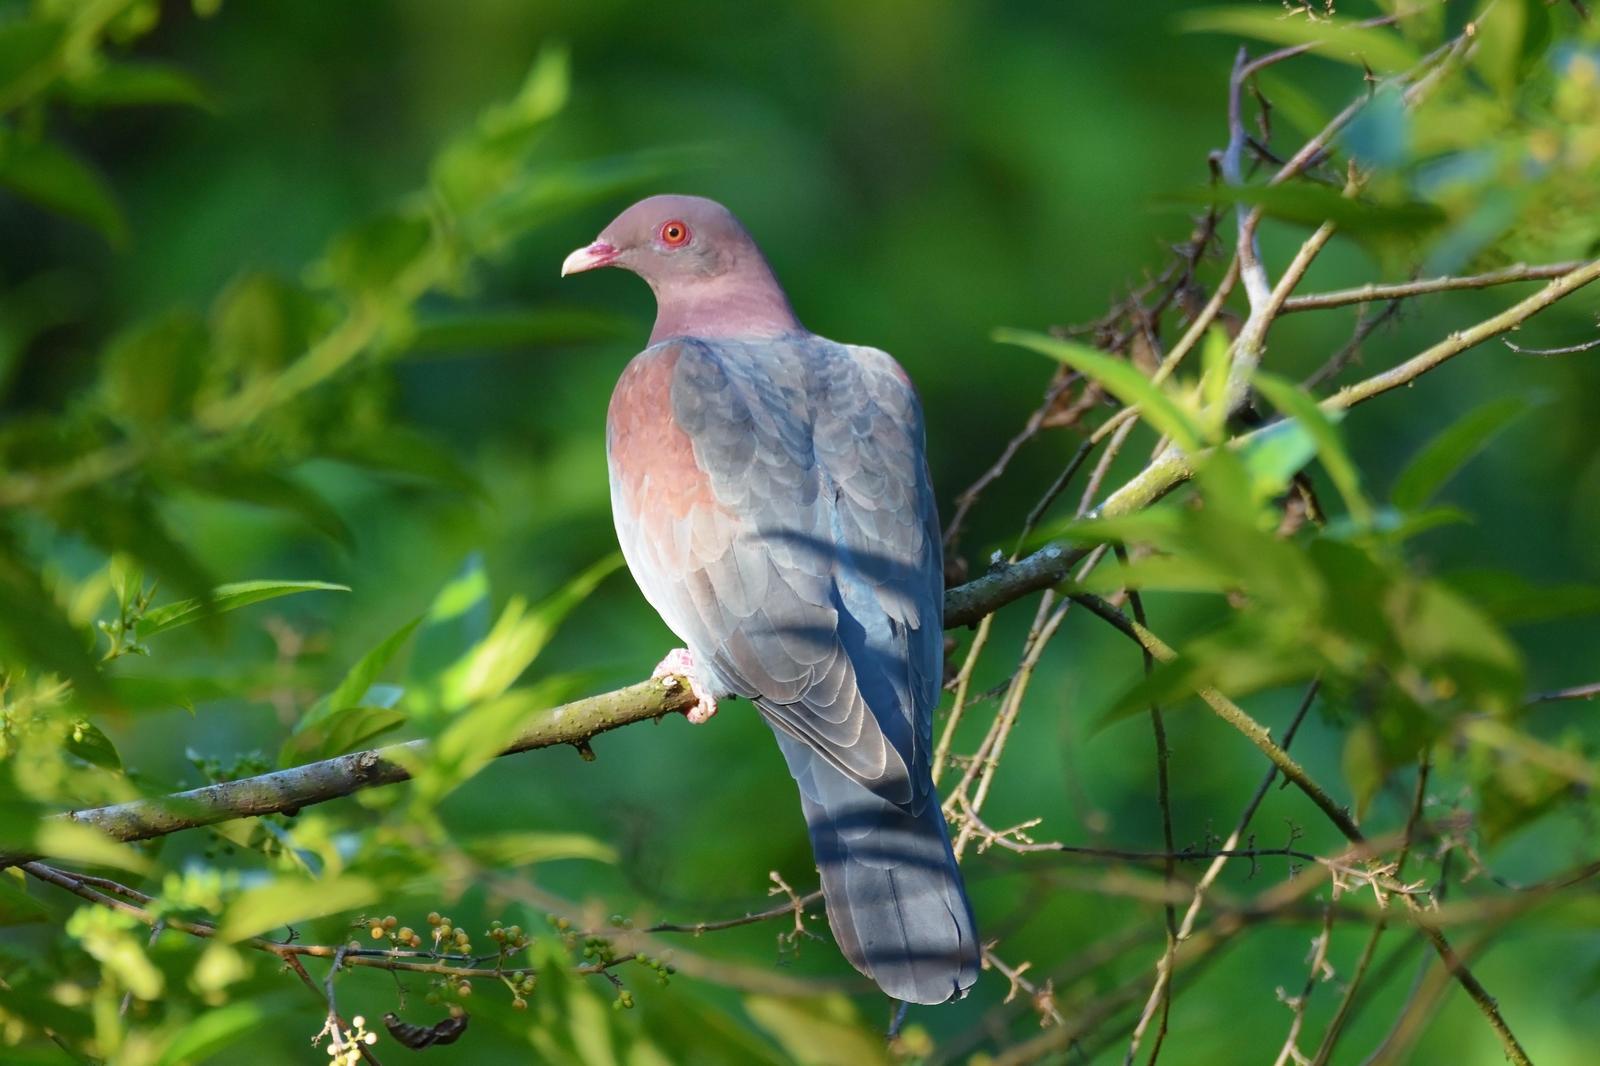 Red-billed Pigeon Photo by Gustavo Fernandez